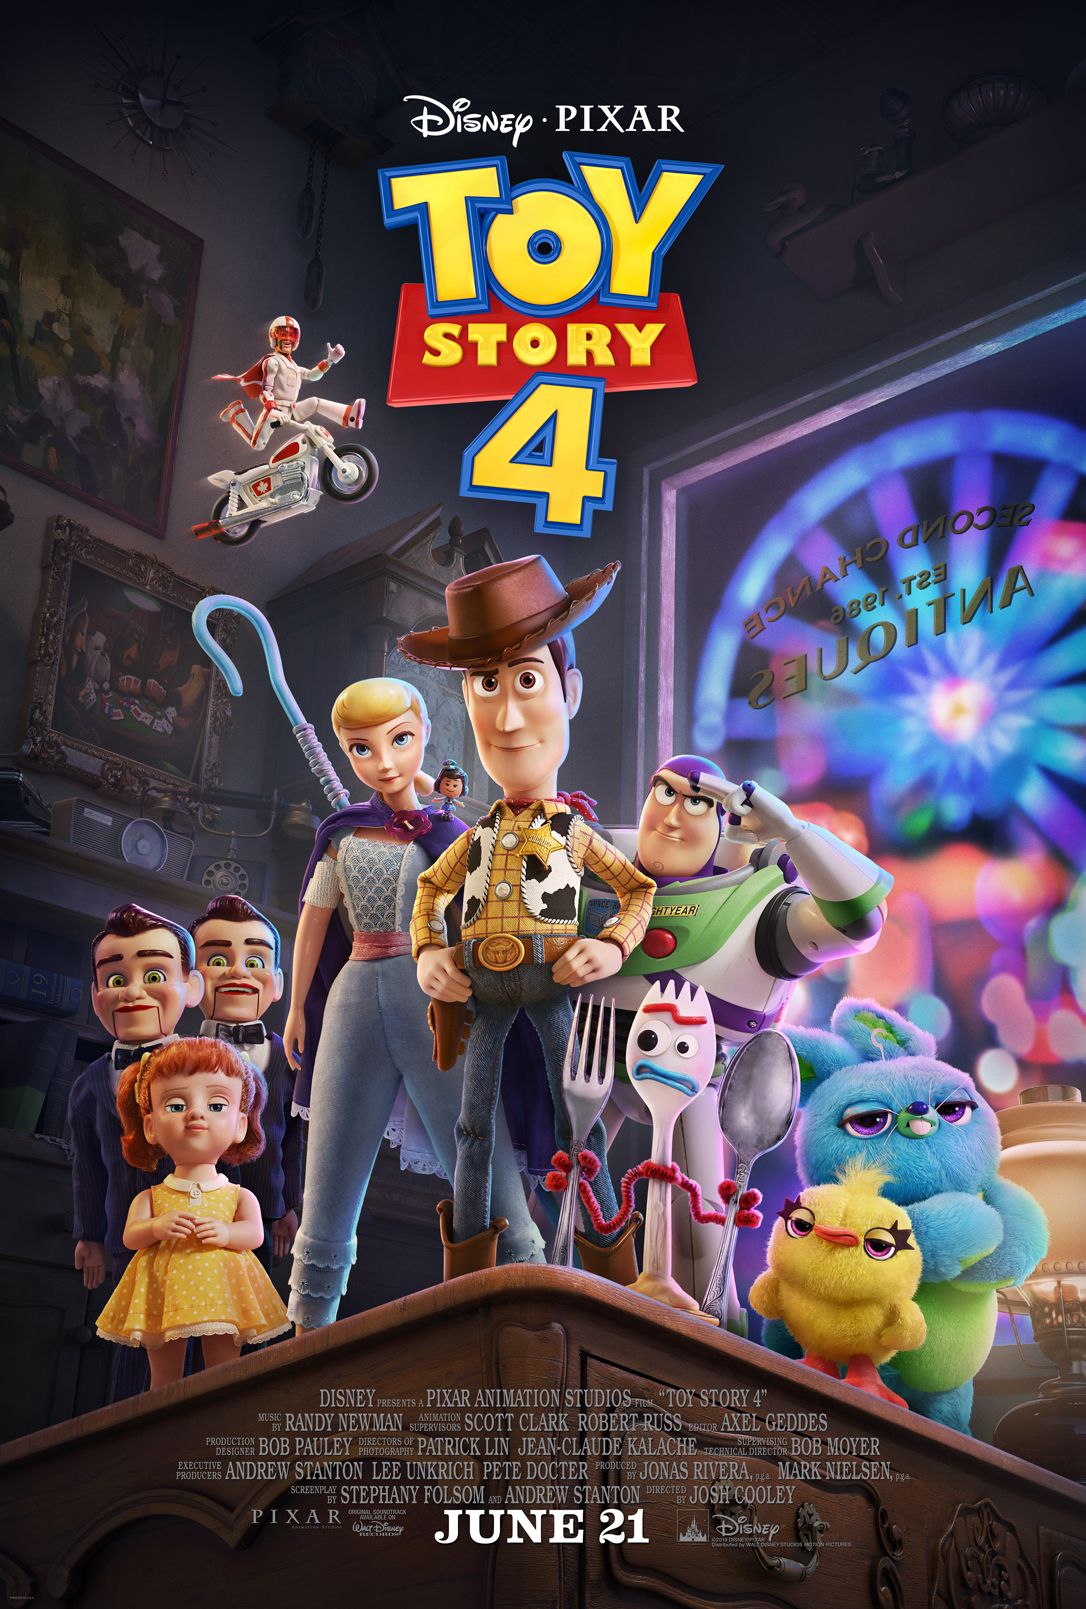 Hračky budú v Toy Story 4 čeliť mnohým hrozbám vrátane hravej mačky, ktorá ich všetky trhá na kusy